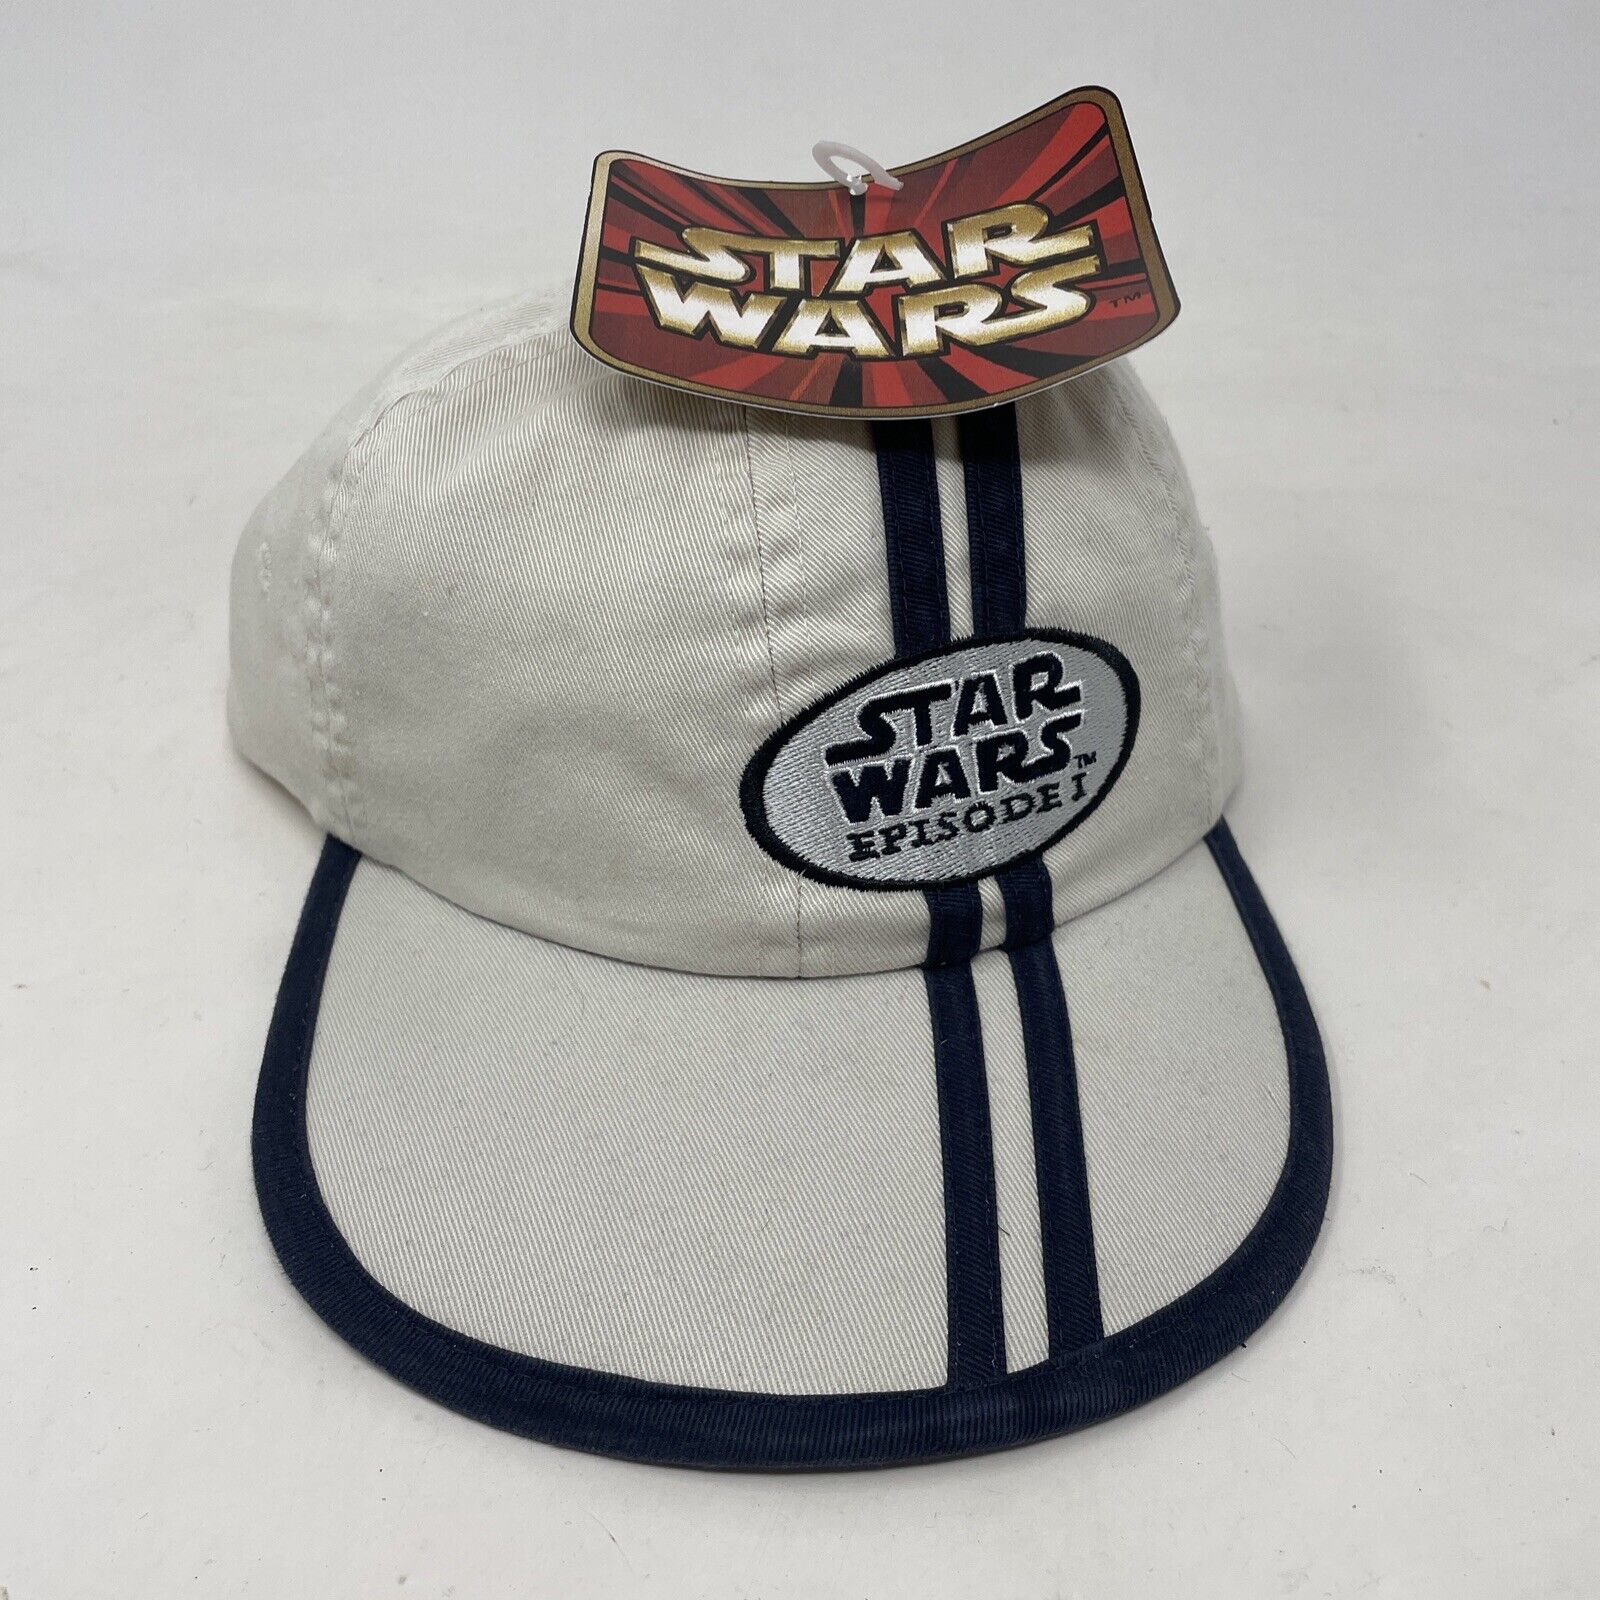 Vintage Star Wars Episode 1 Adjustable Hat NOS NEW Promotional Striped Licasfilm